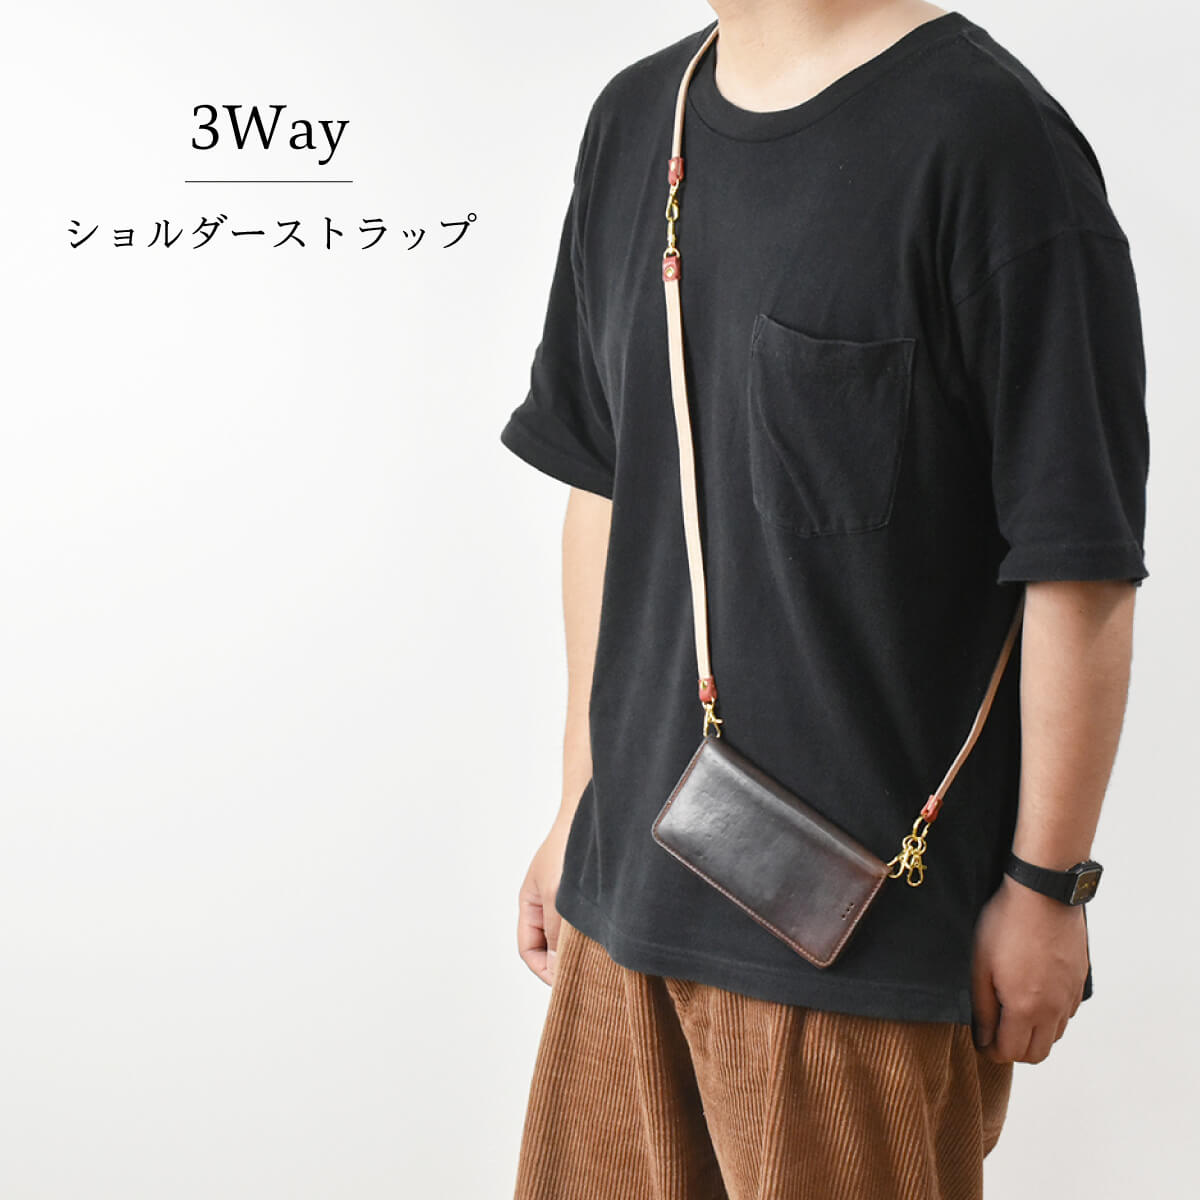 Tochigi Leather Shoulder Strap Long Length